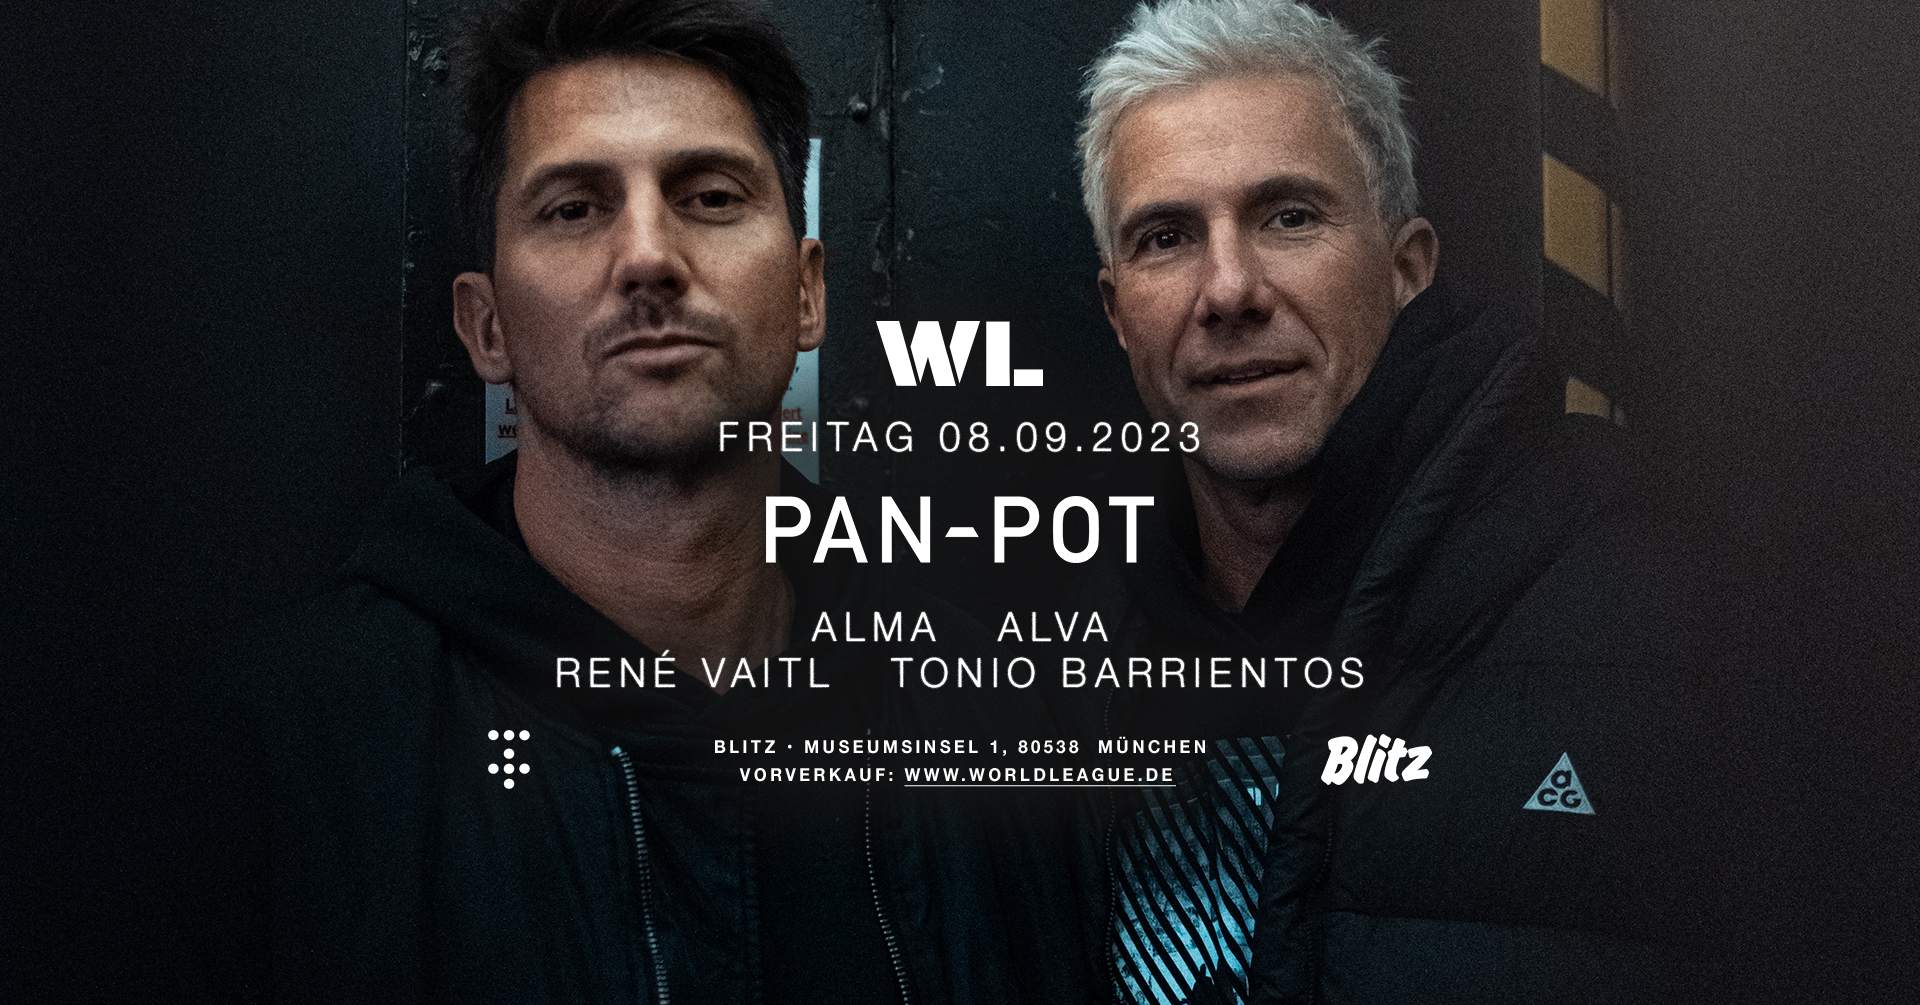 World League with Pan-Pot - Página frontal